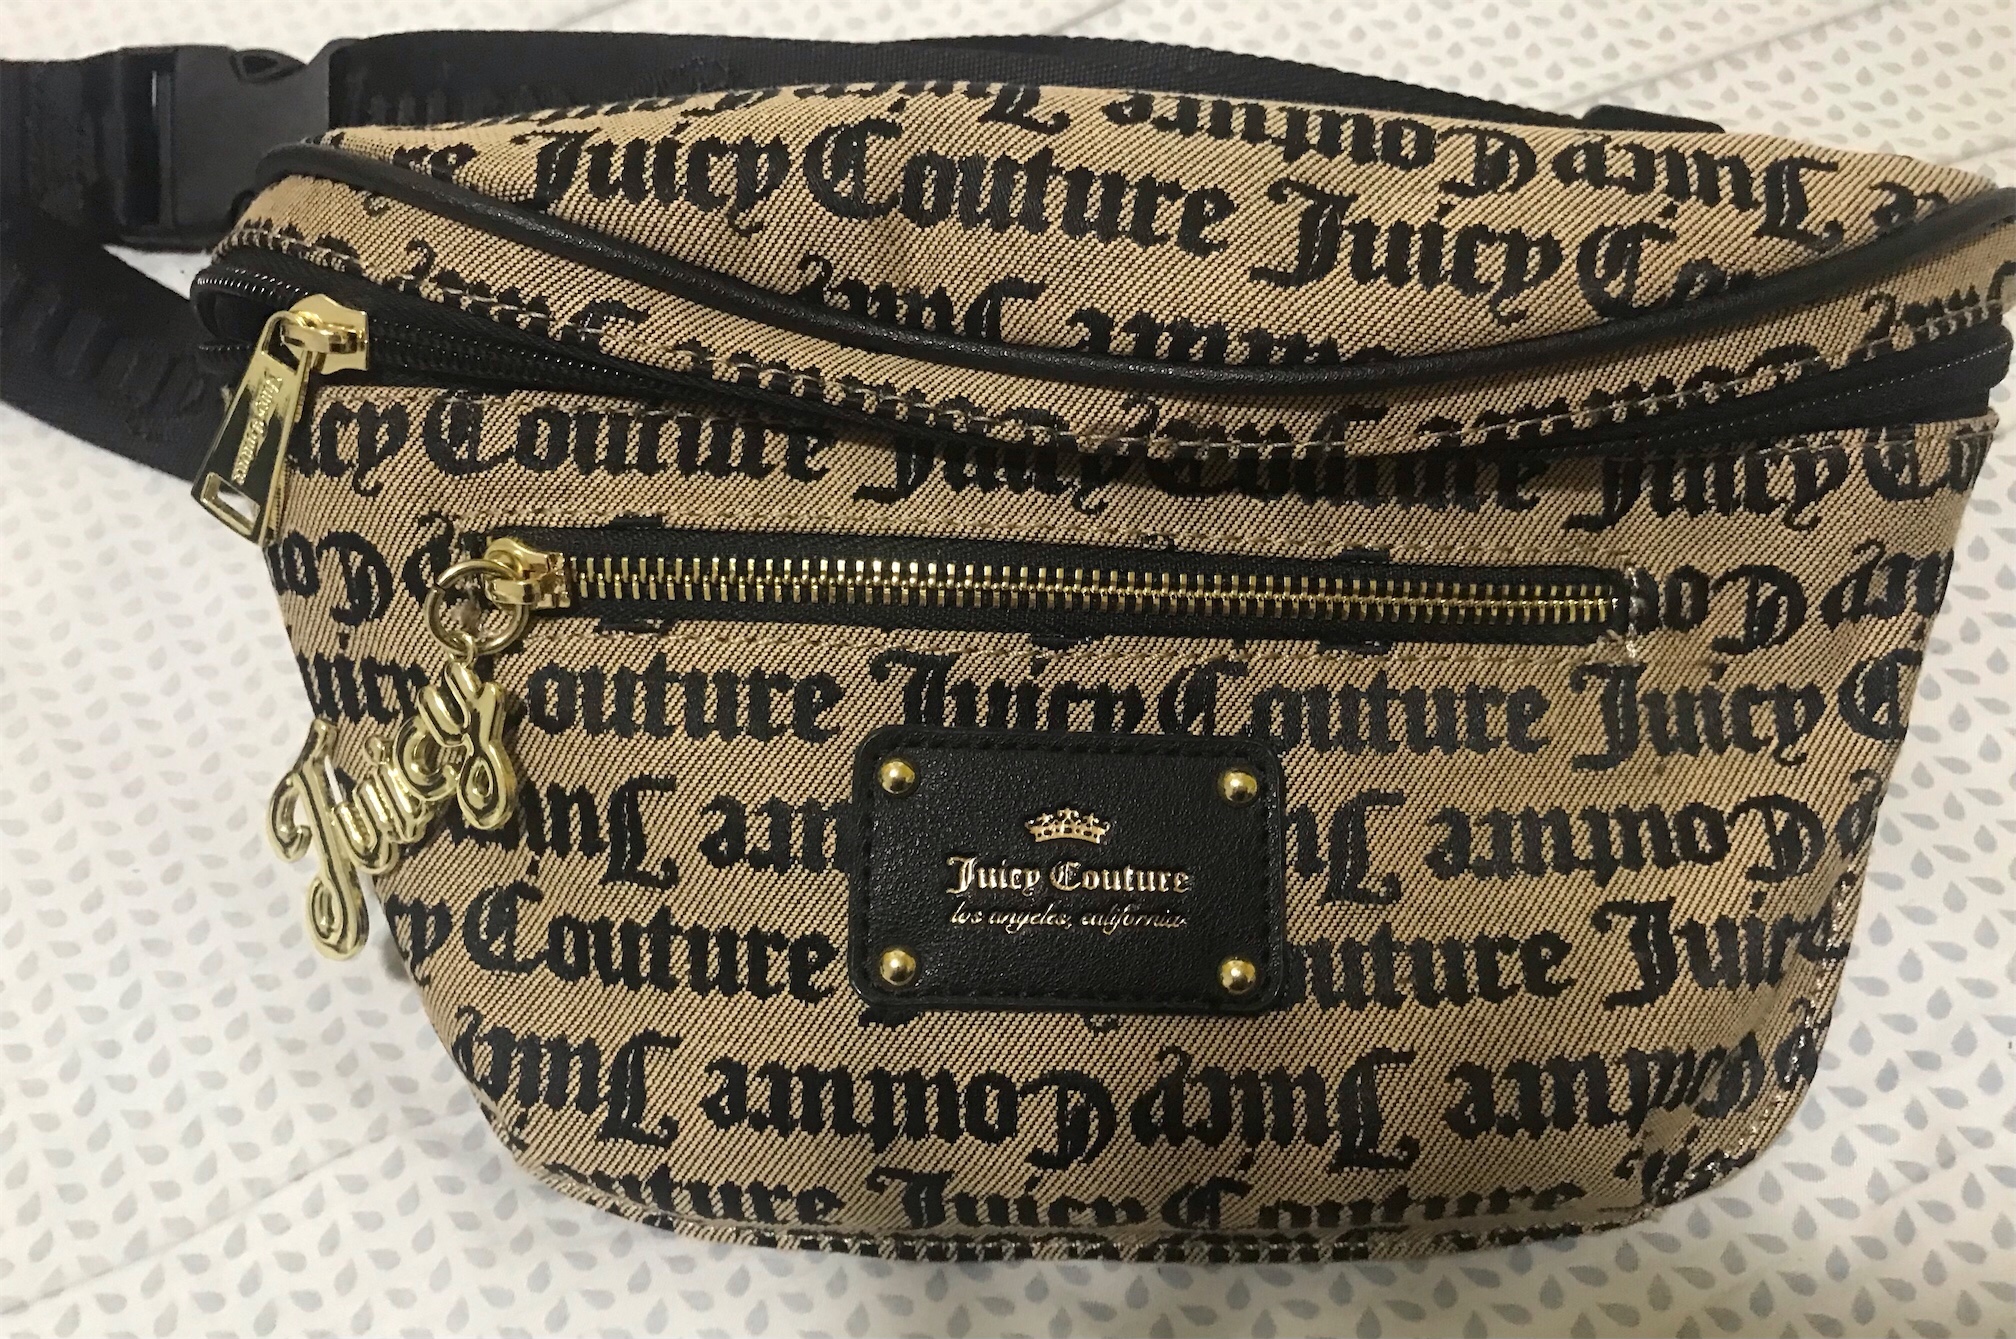 carteras y maletas - Cartera tipo riñonera marca Juicy couture original.